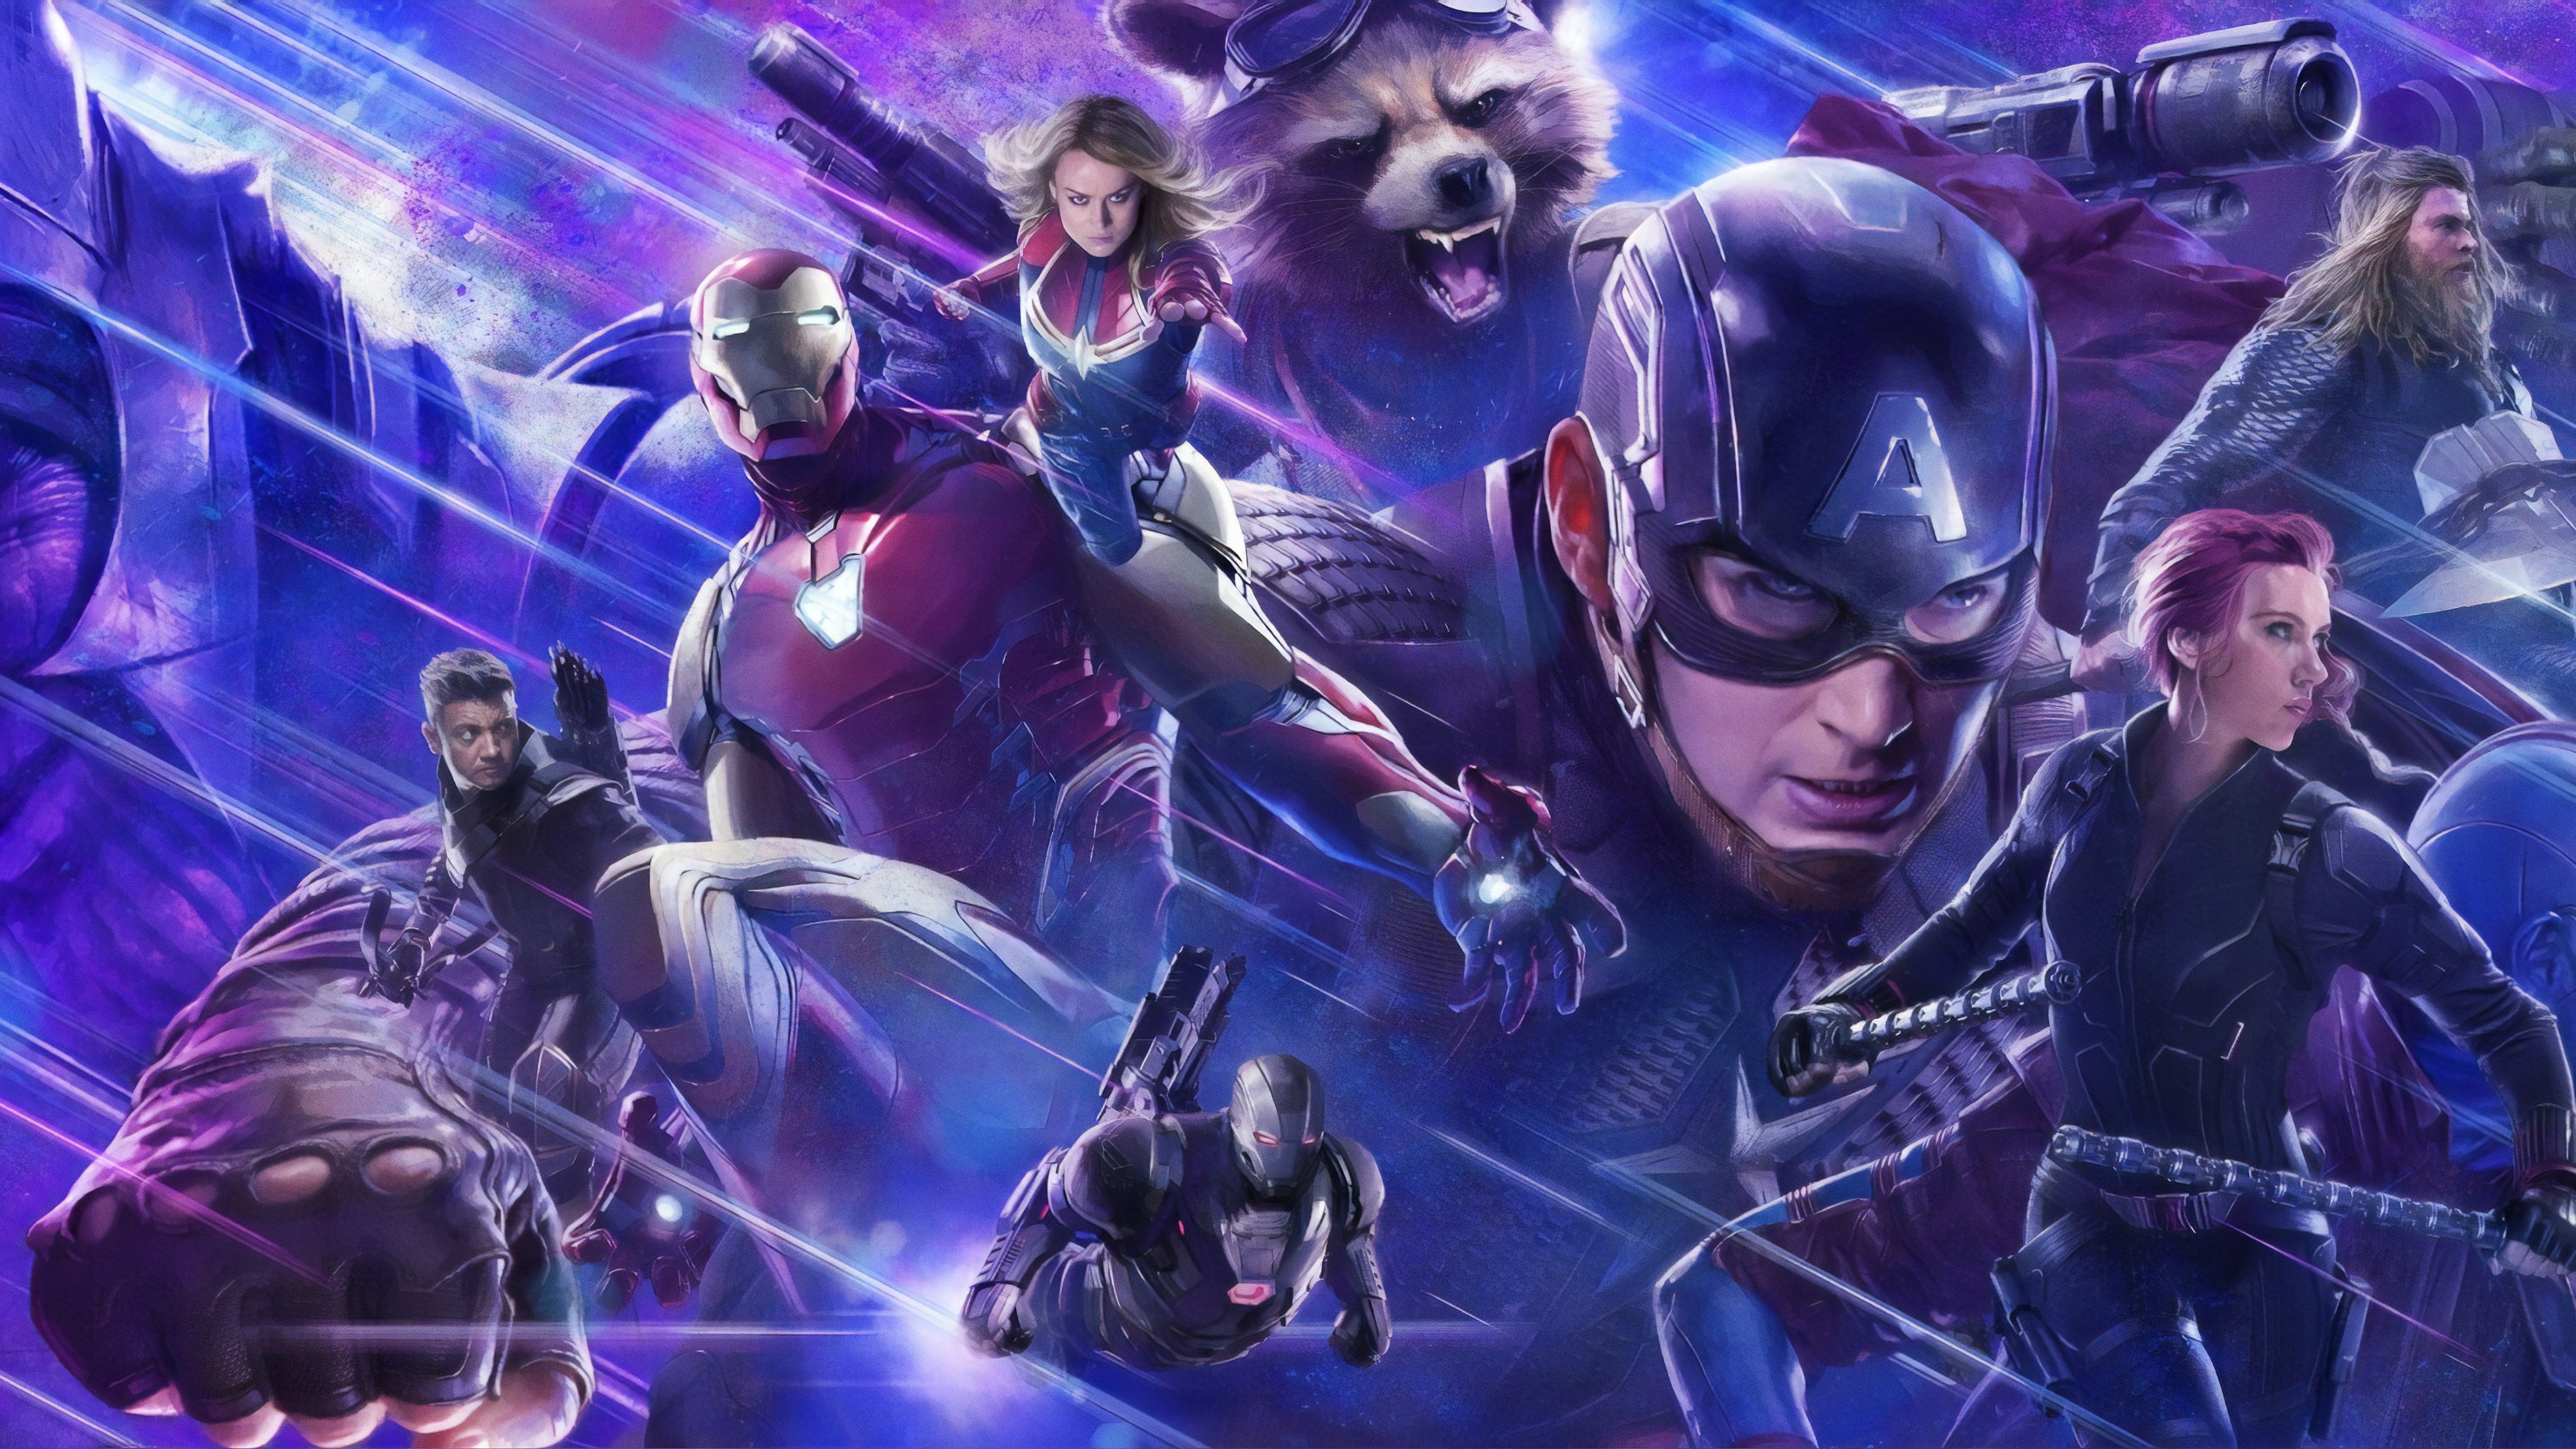 Avengers Endgame 5K WallpapersAvengers Endgame 5K Wallpapers